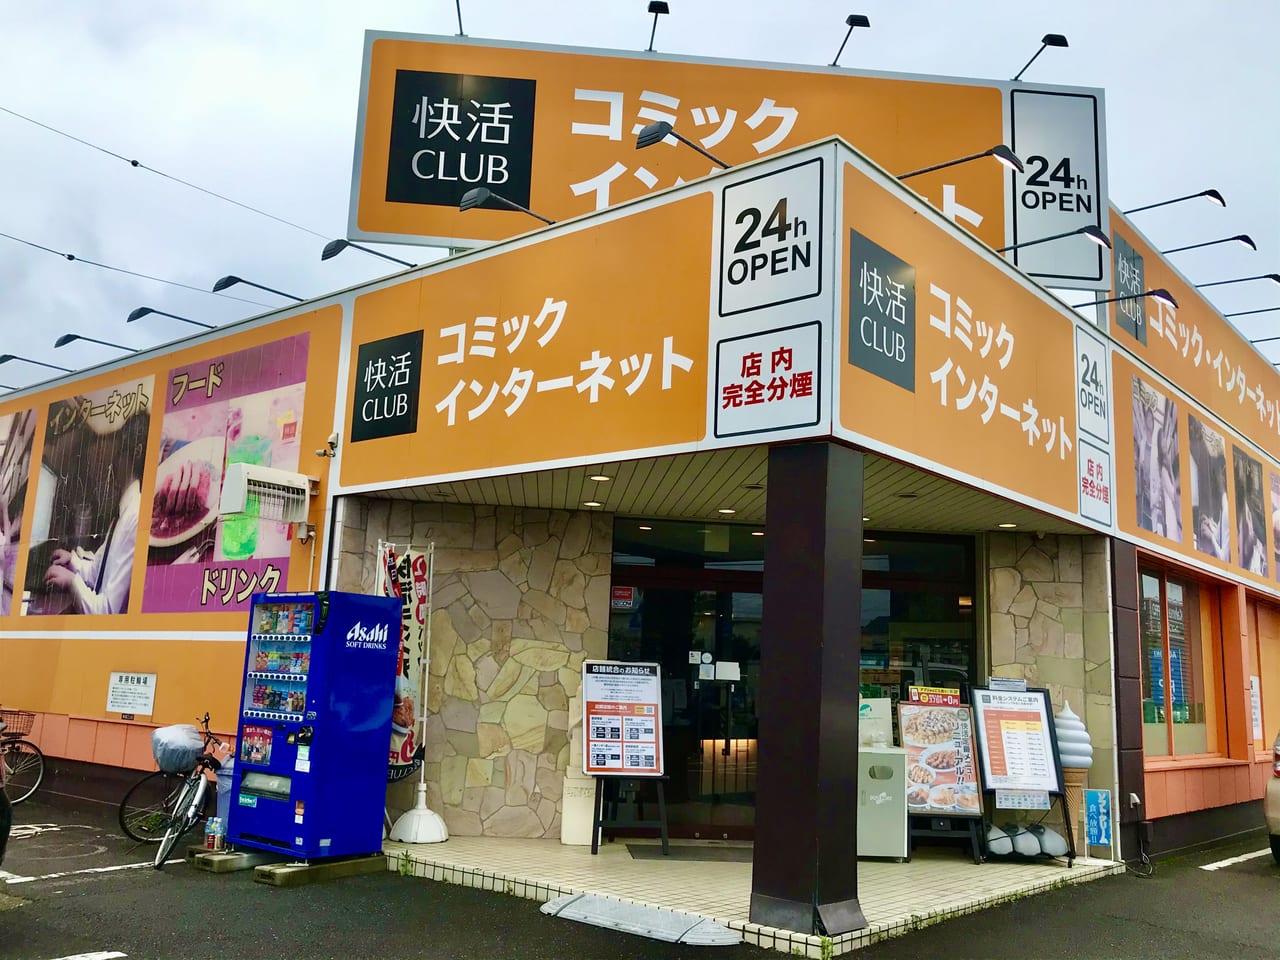 稲沢市 快活club稲沢店が5月31日で閉店 10月中旬には24時間営業のセルフトレーニングジム Fit24 に生まれ変わります 号外net 稲沢市 清須市